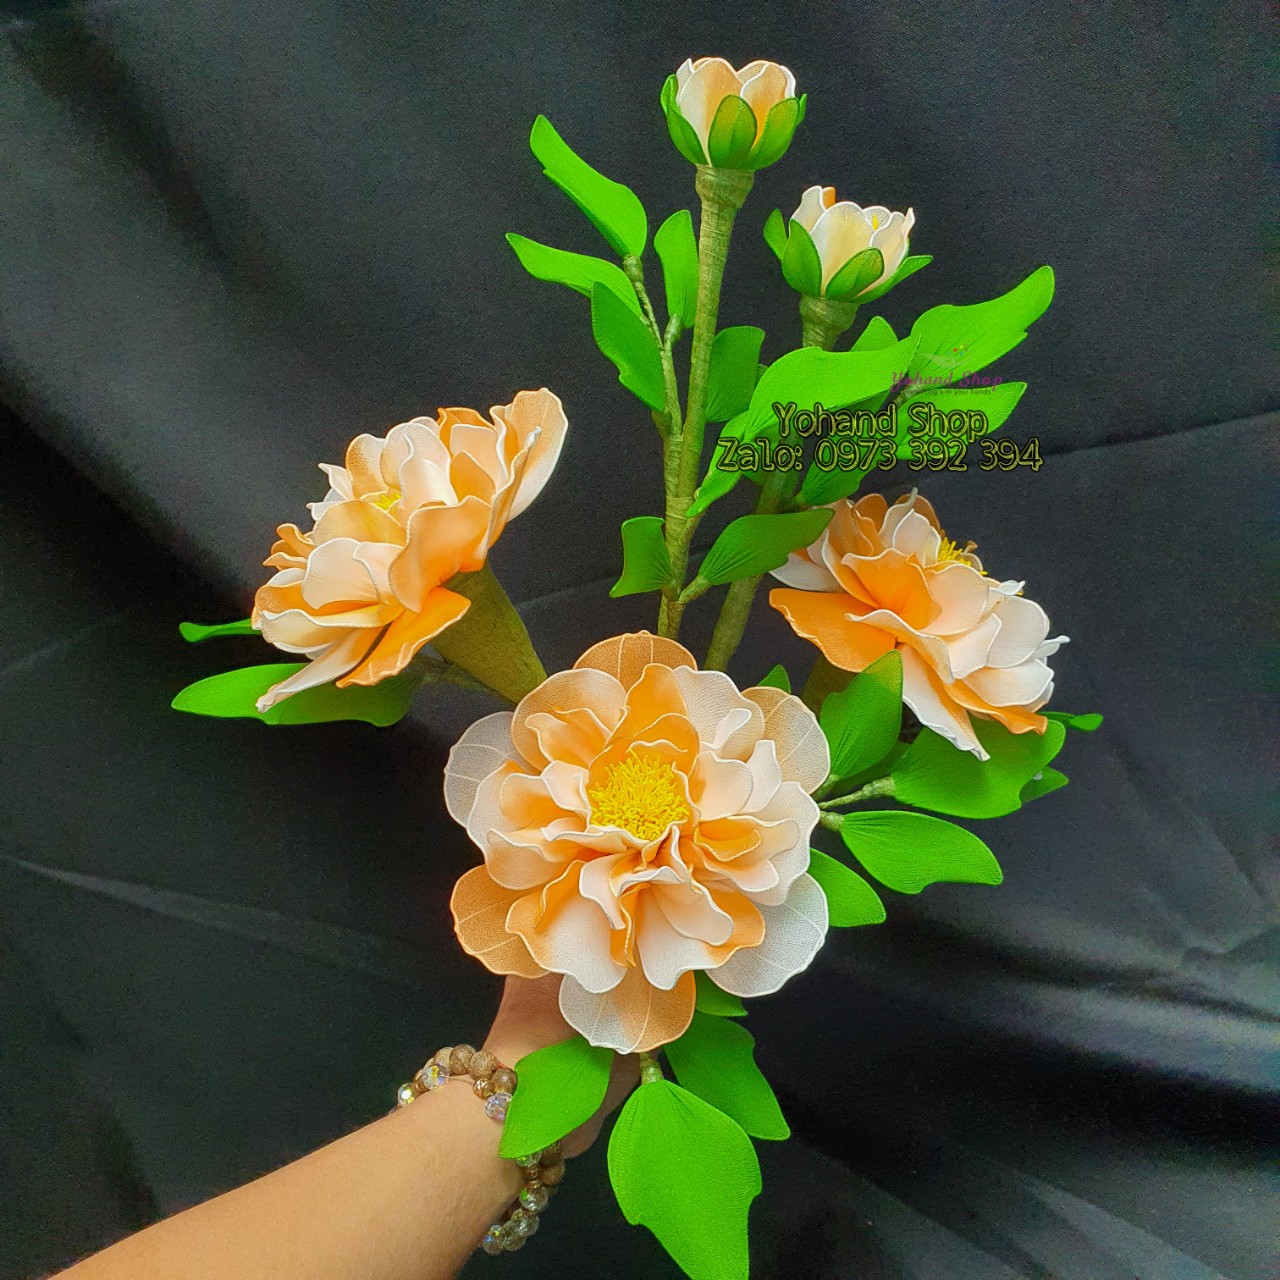 Nền Hoa Mẫu đơn đẹp Hoa Thực Vật Hoa Mẫu đơn Màu Hình Chụp Và Hình ảnh Để  Tải Về Miễn Phí - Pngtree